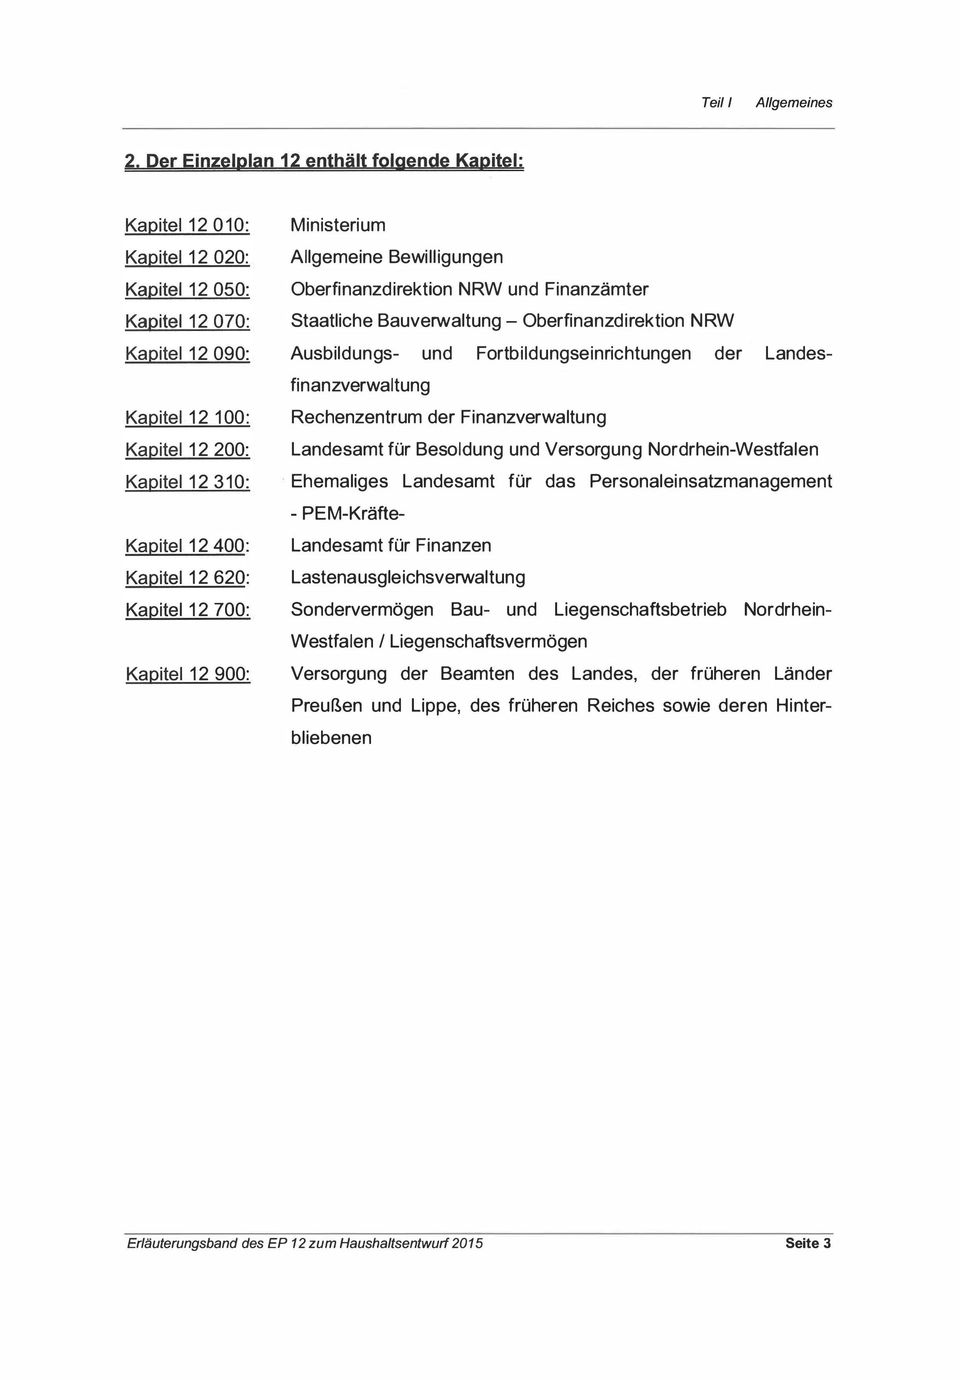 620: Kapitel 12 700: Kapitel 12 900: Ministerium Allgemeine Bewilligungen Oberfinanzdirektion NRW und Finanzämter Staatliche Bauverwaltung - Oberfinanzdirektion NRW Ausbildungs- und